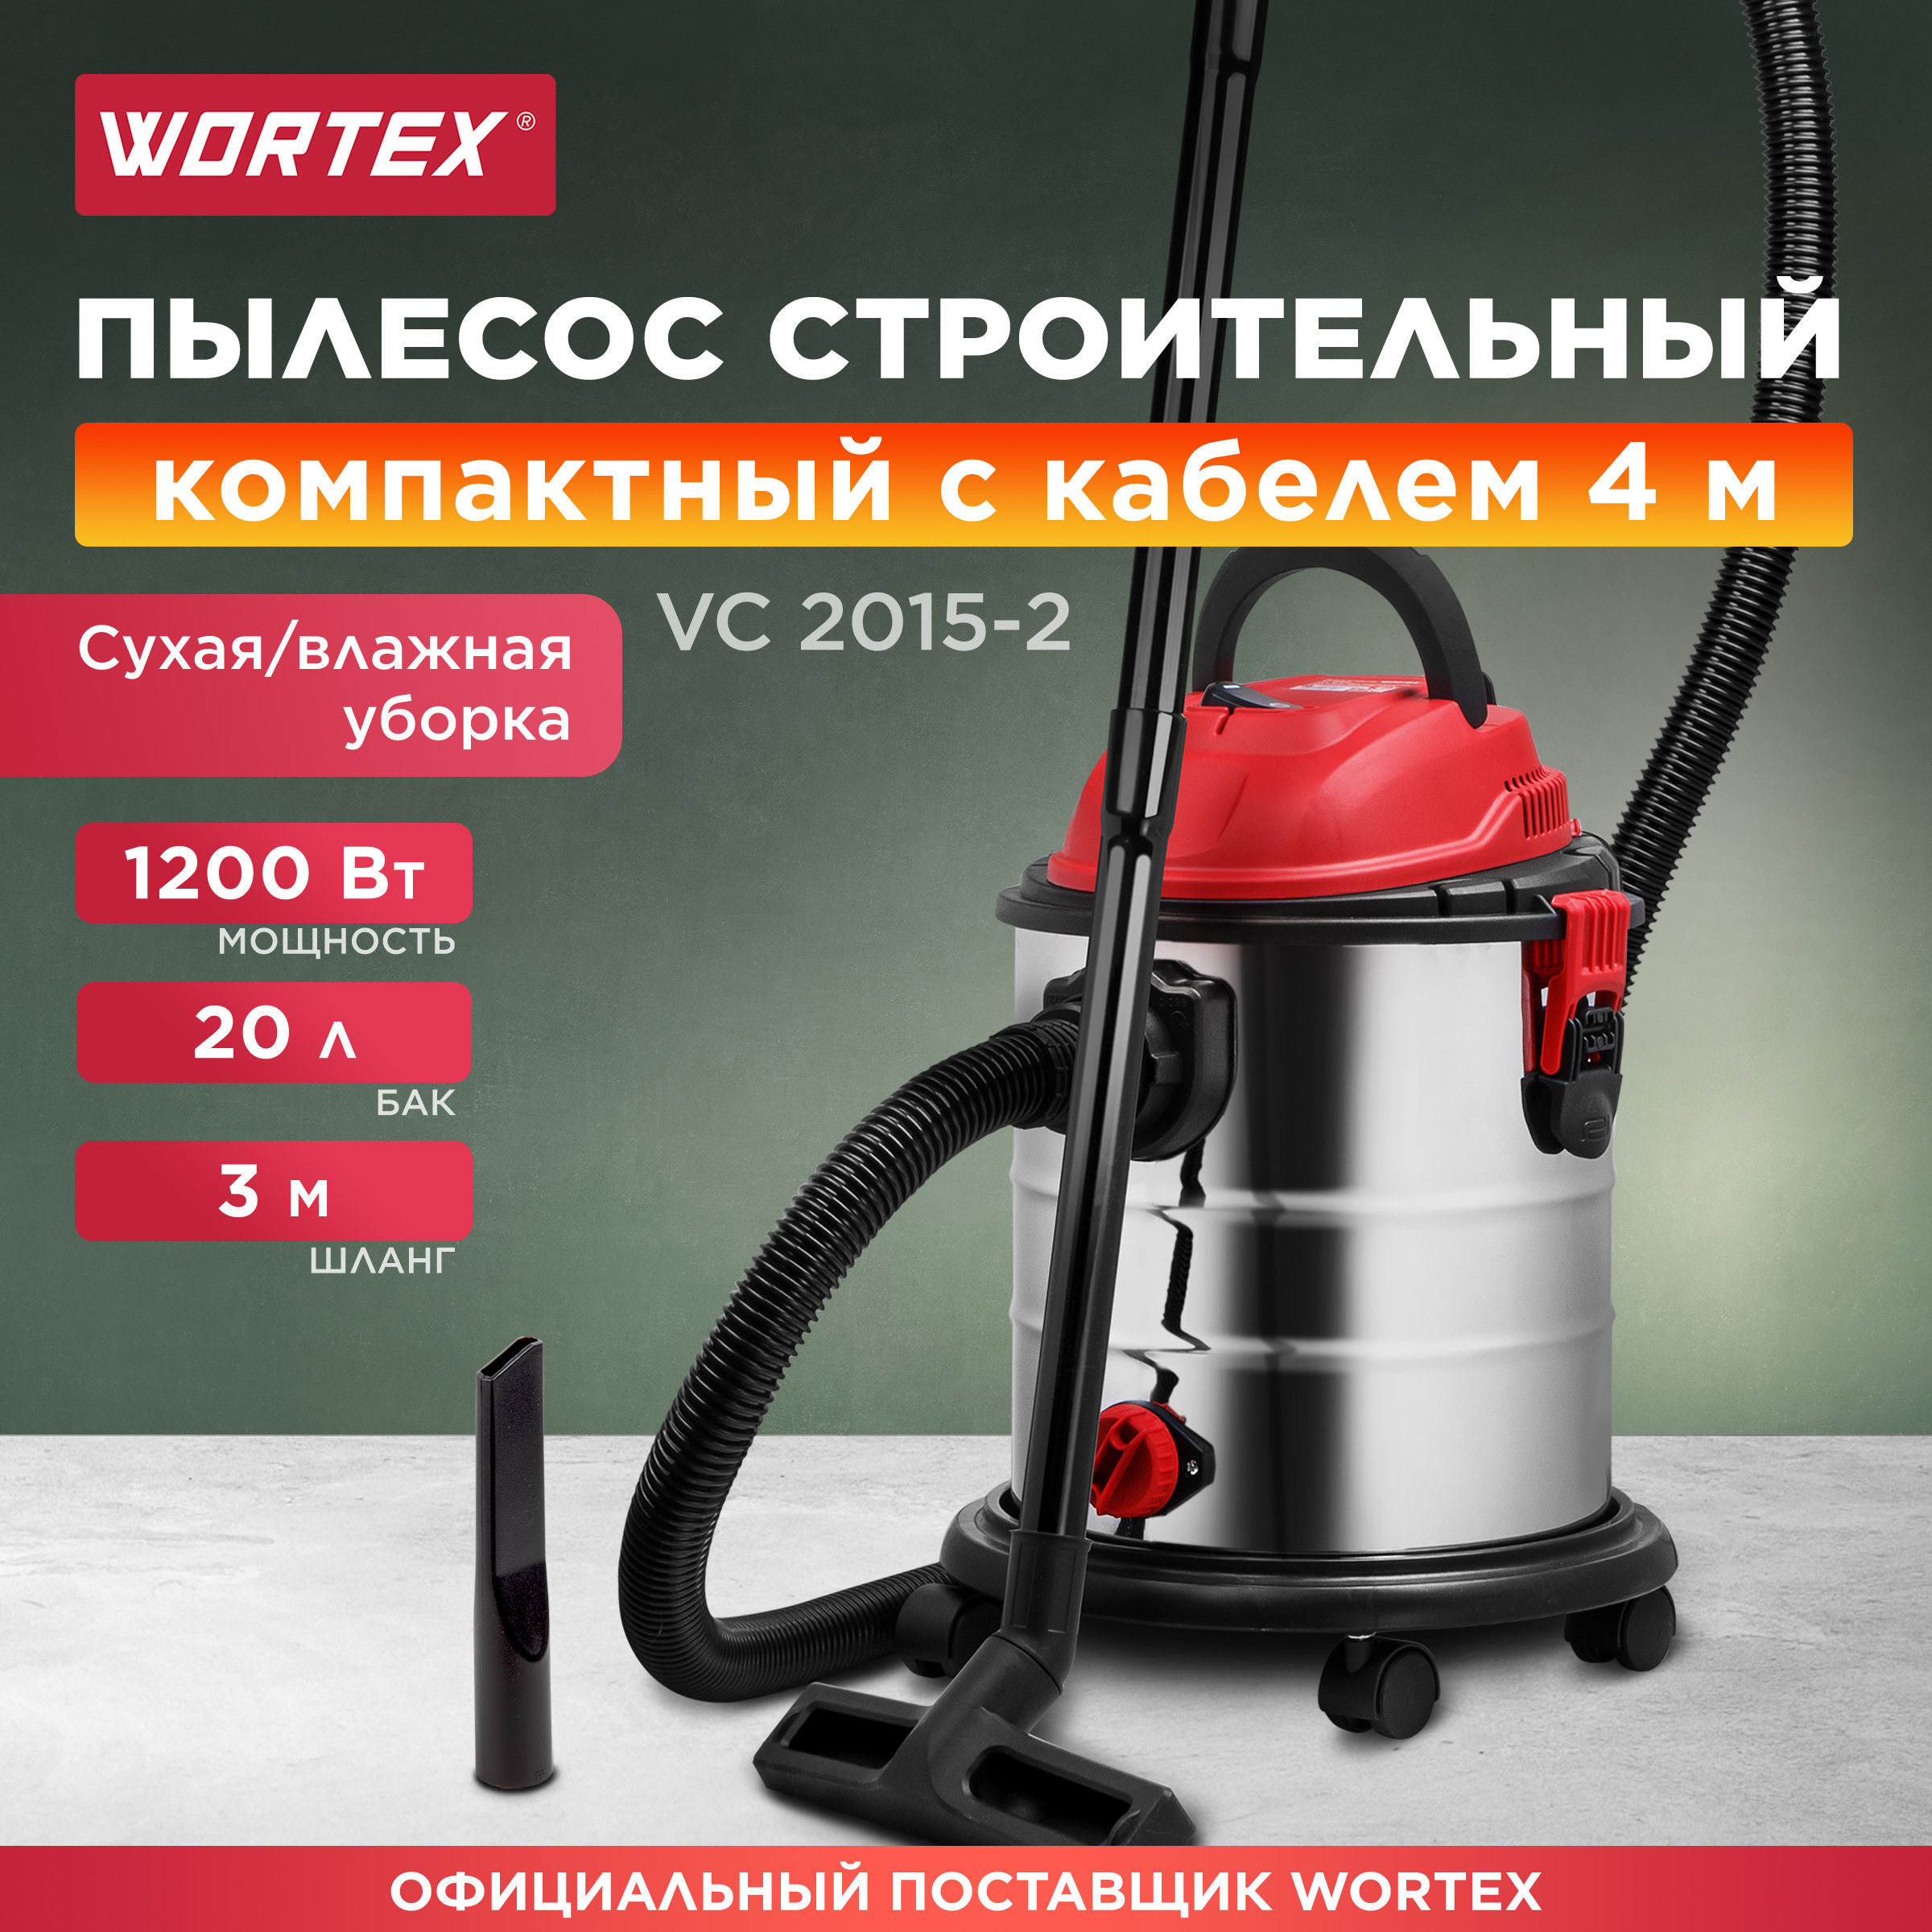 Пылесос строительный WORTEX VC 2015-2 WS (1329407) пылесос строительный wortex vc 2015 2 ws 1329407